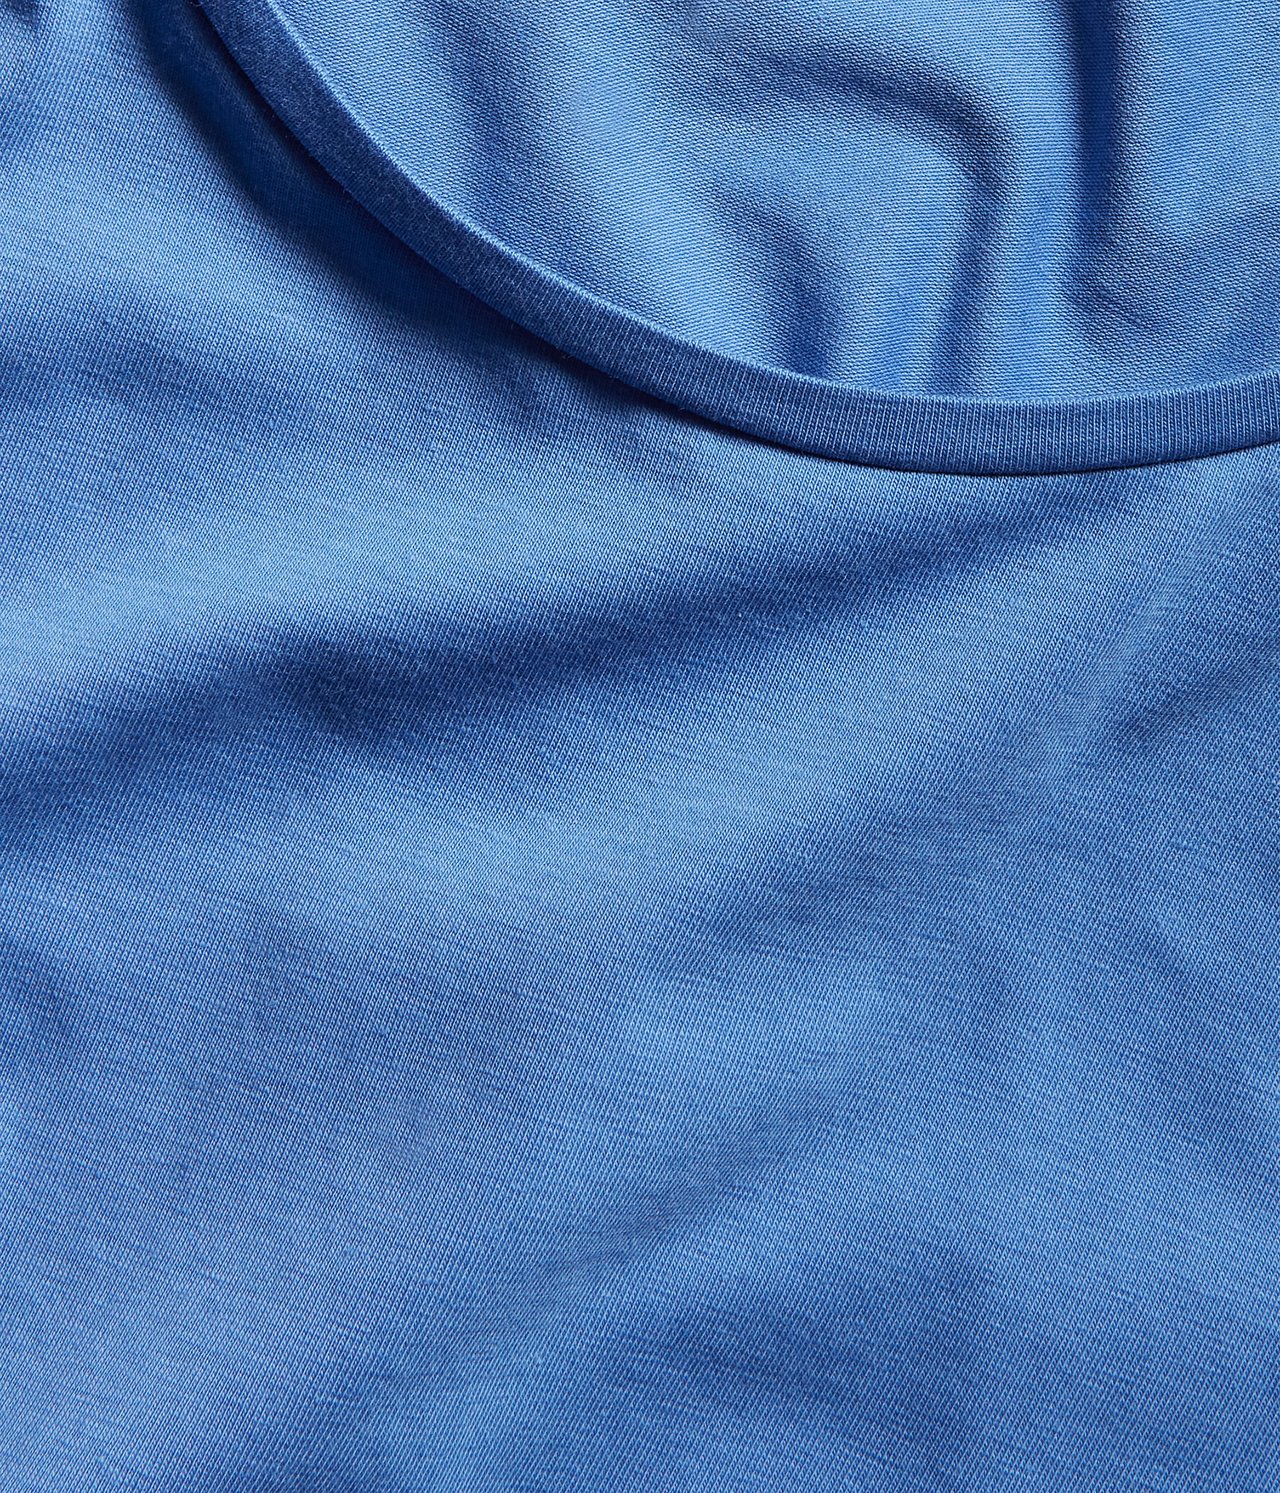 Koszulka basic z okrągłym dekoltem - Niebieski - 4